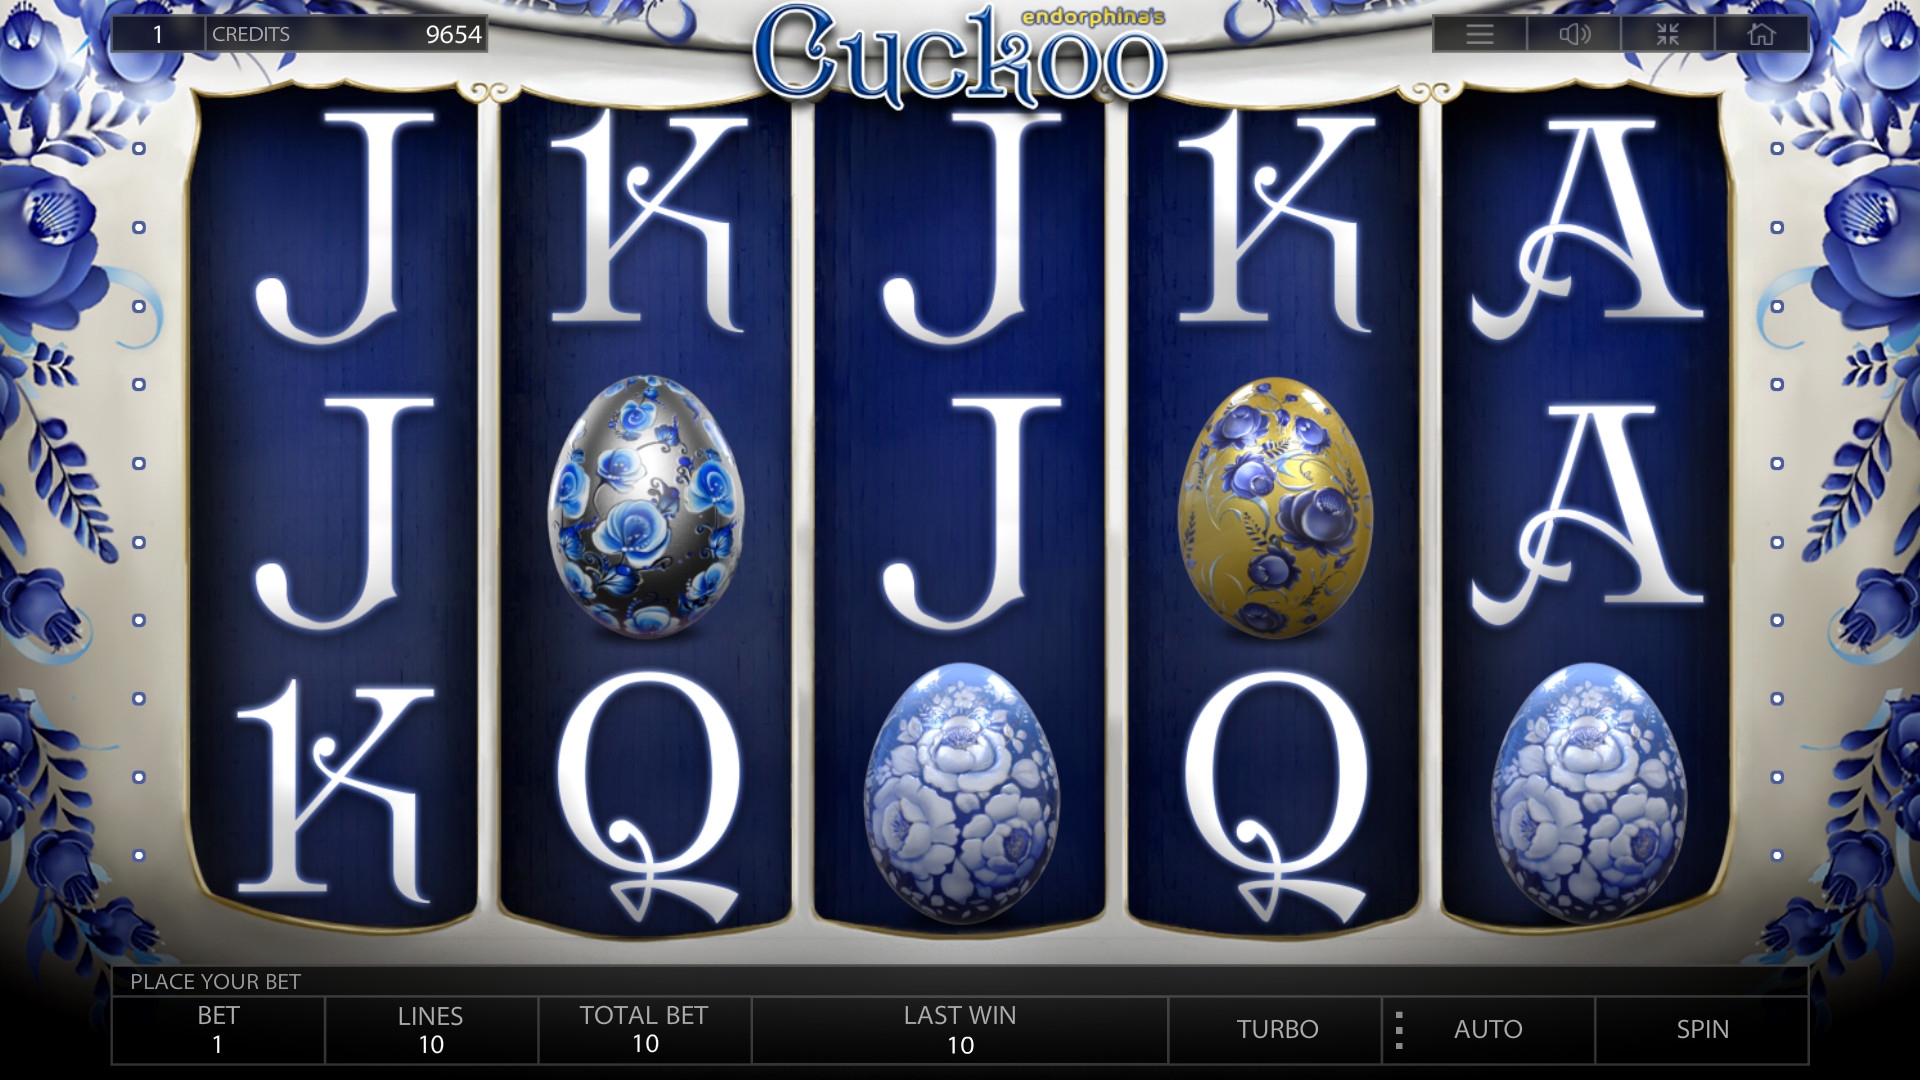 Cuckoo (Cuckoo) from category Slots